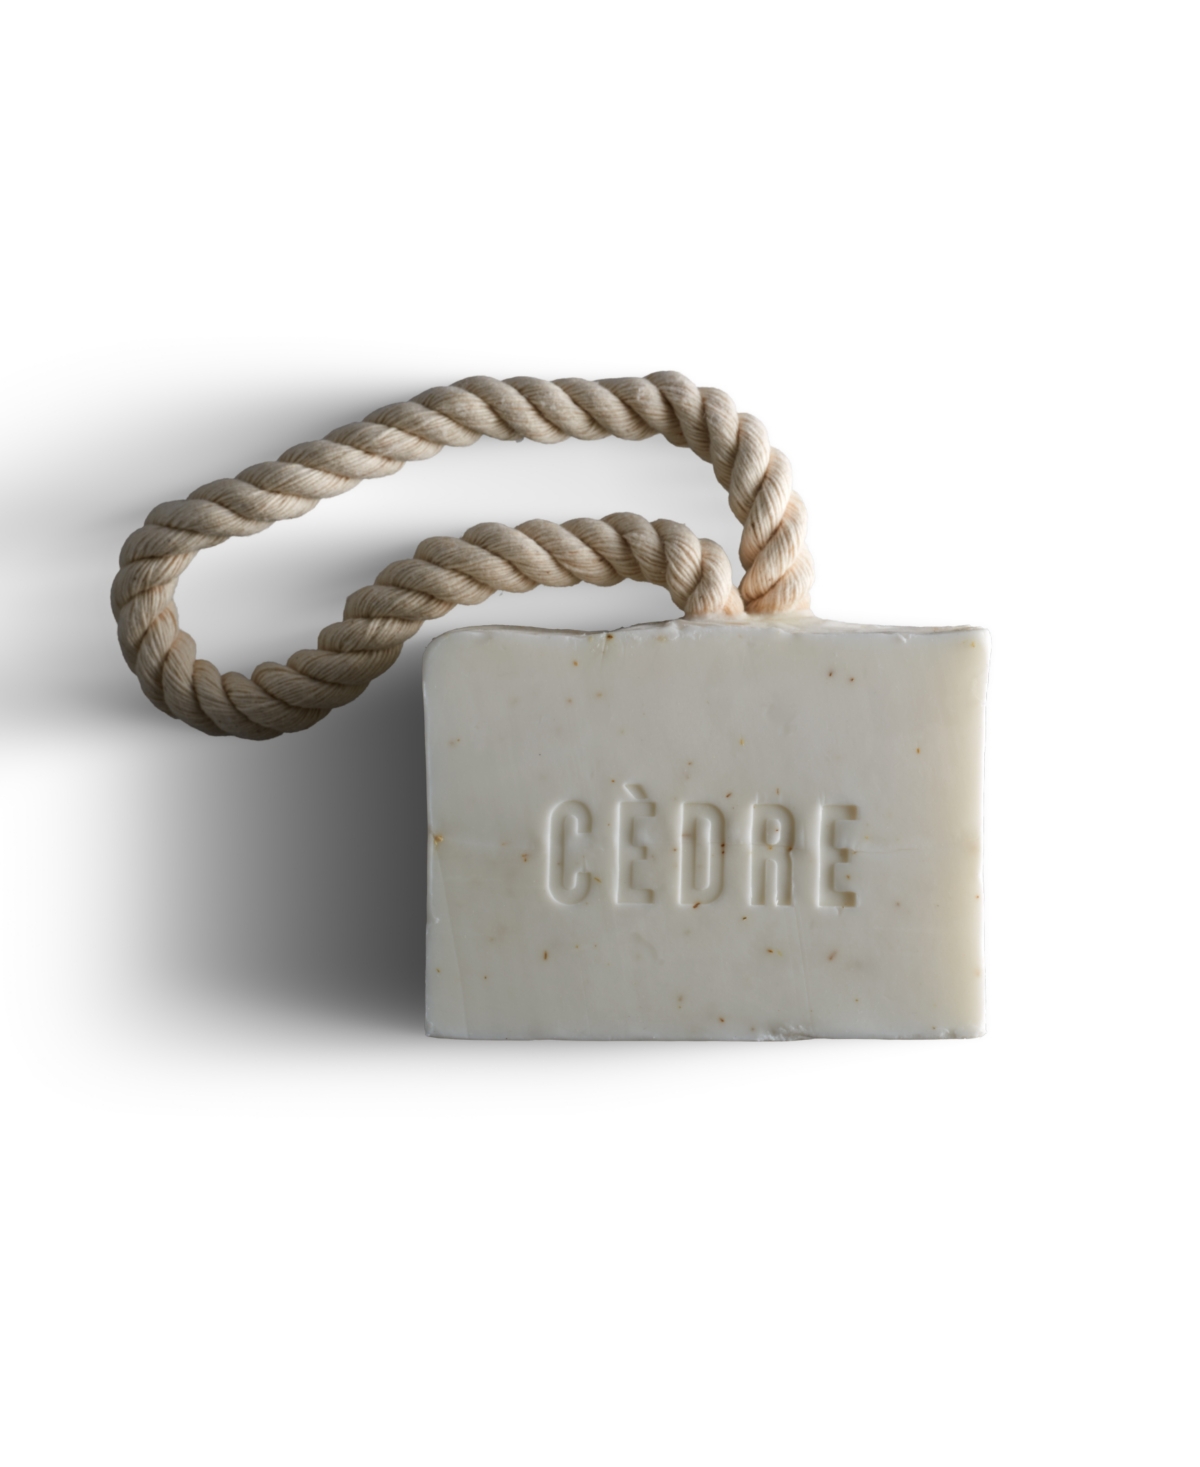 Clark & James Cedre Rope Soap - White